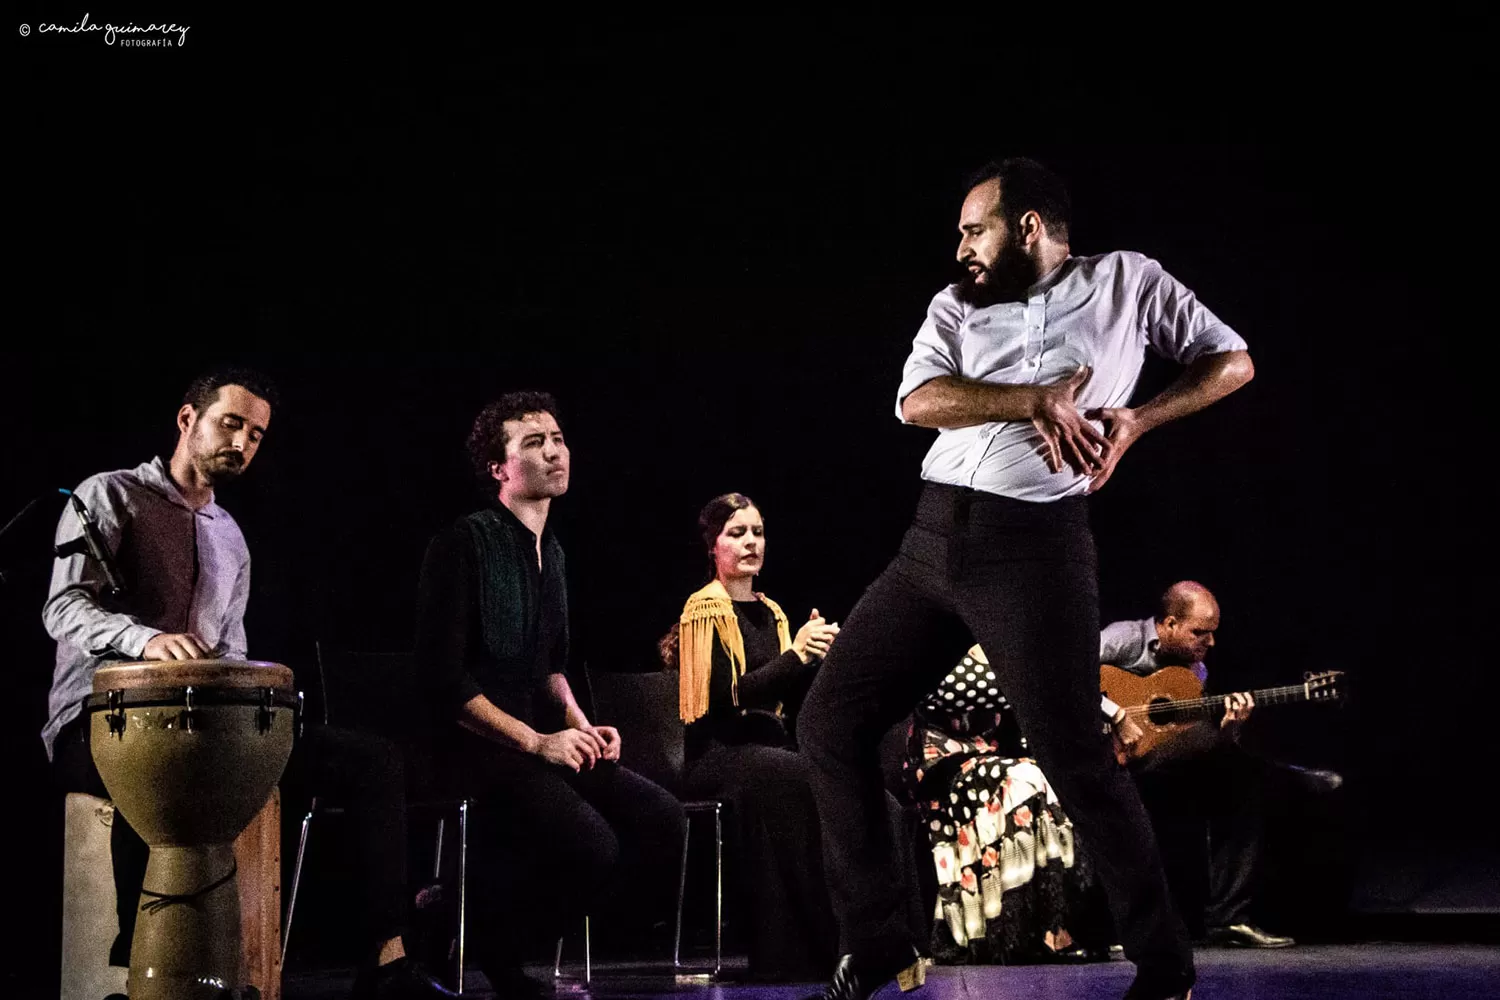 Teatro Municipal: el escenario se convierte en un tablao flamenco